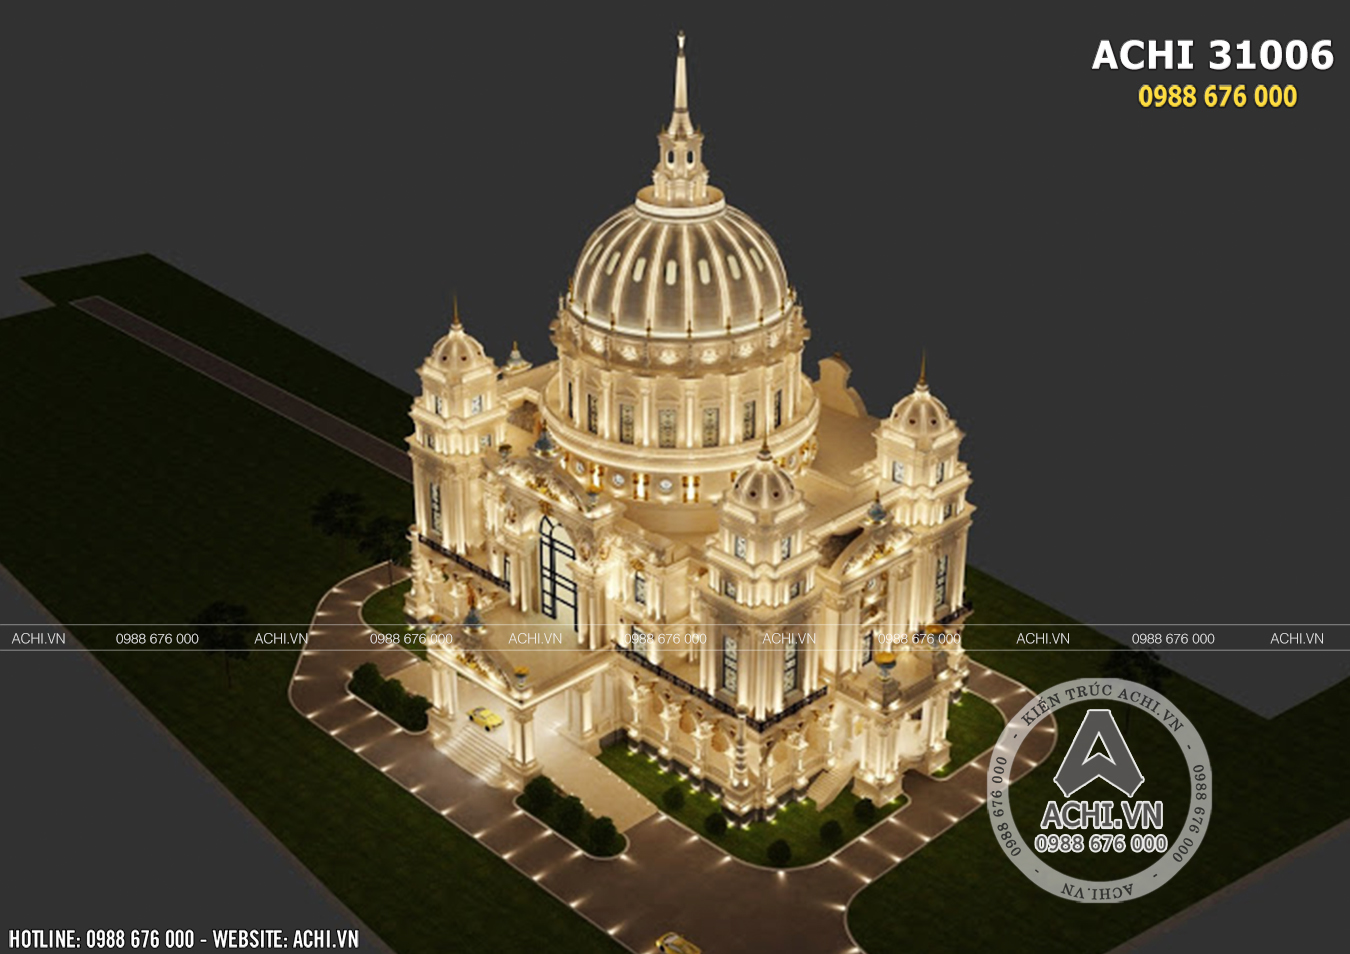 Thiết kế siêu lâu đài tân cổ điển lớn nhất Việt Nam - ACHI 31006